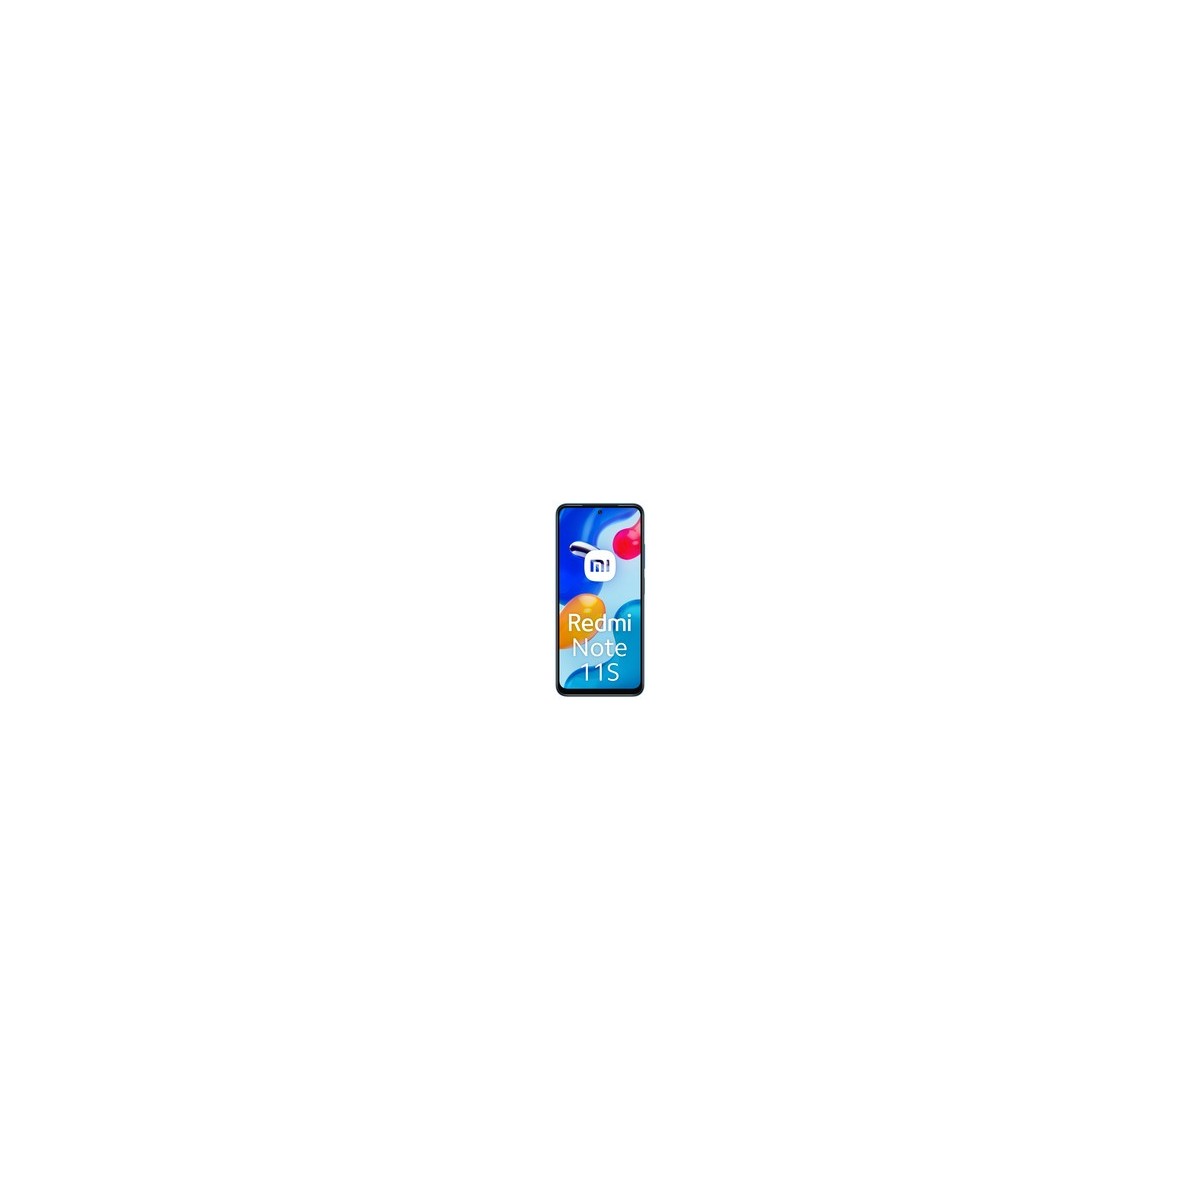 Xiaomi Redmi Note 1 - Smartphone - 8 MP 64 GB - Blau